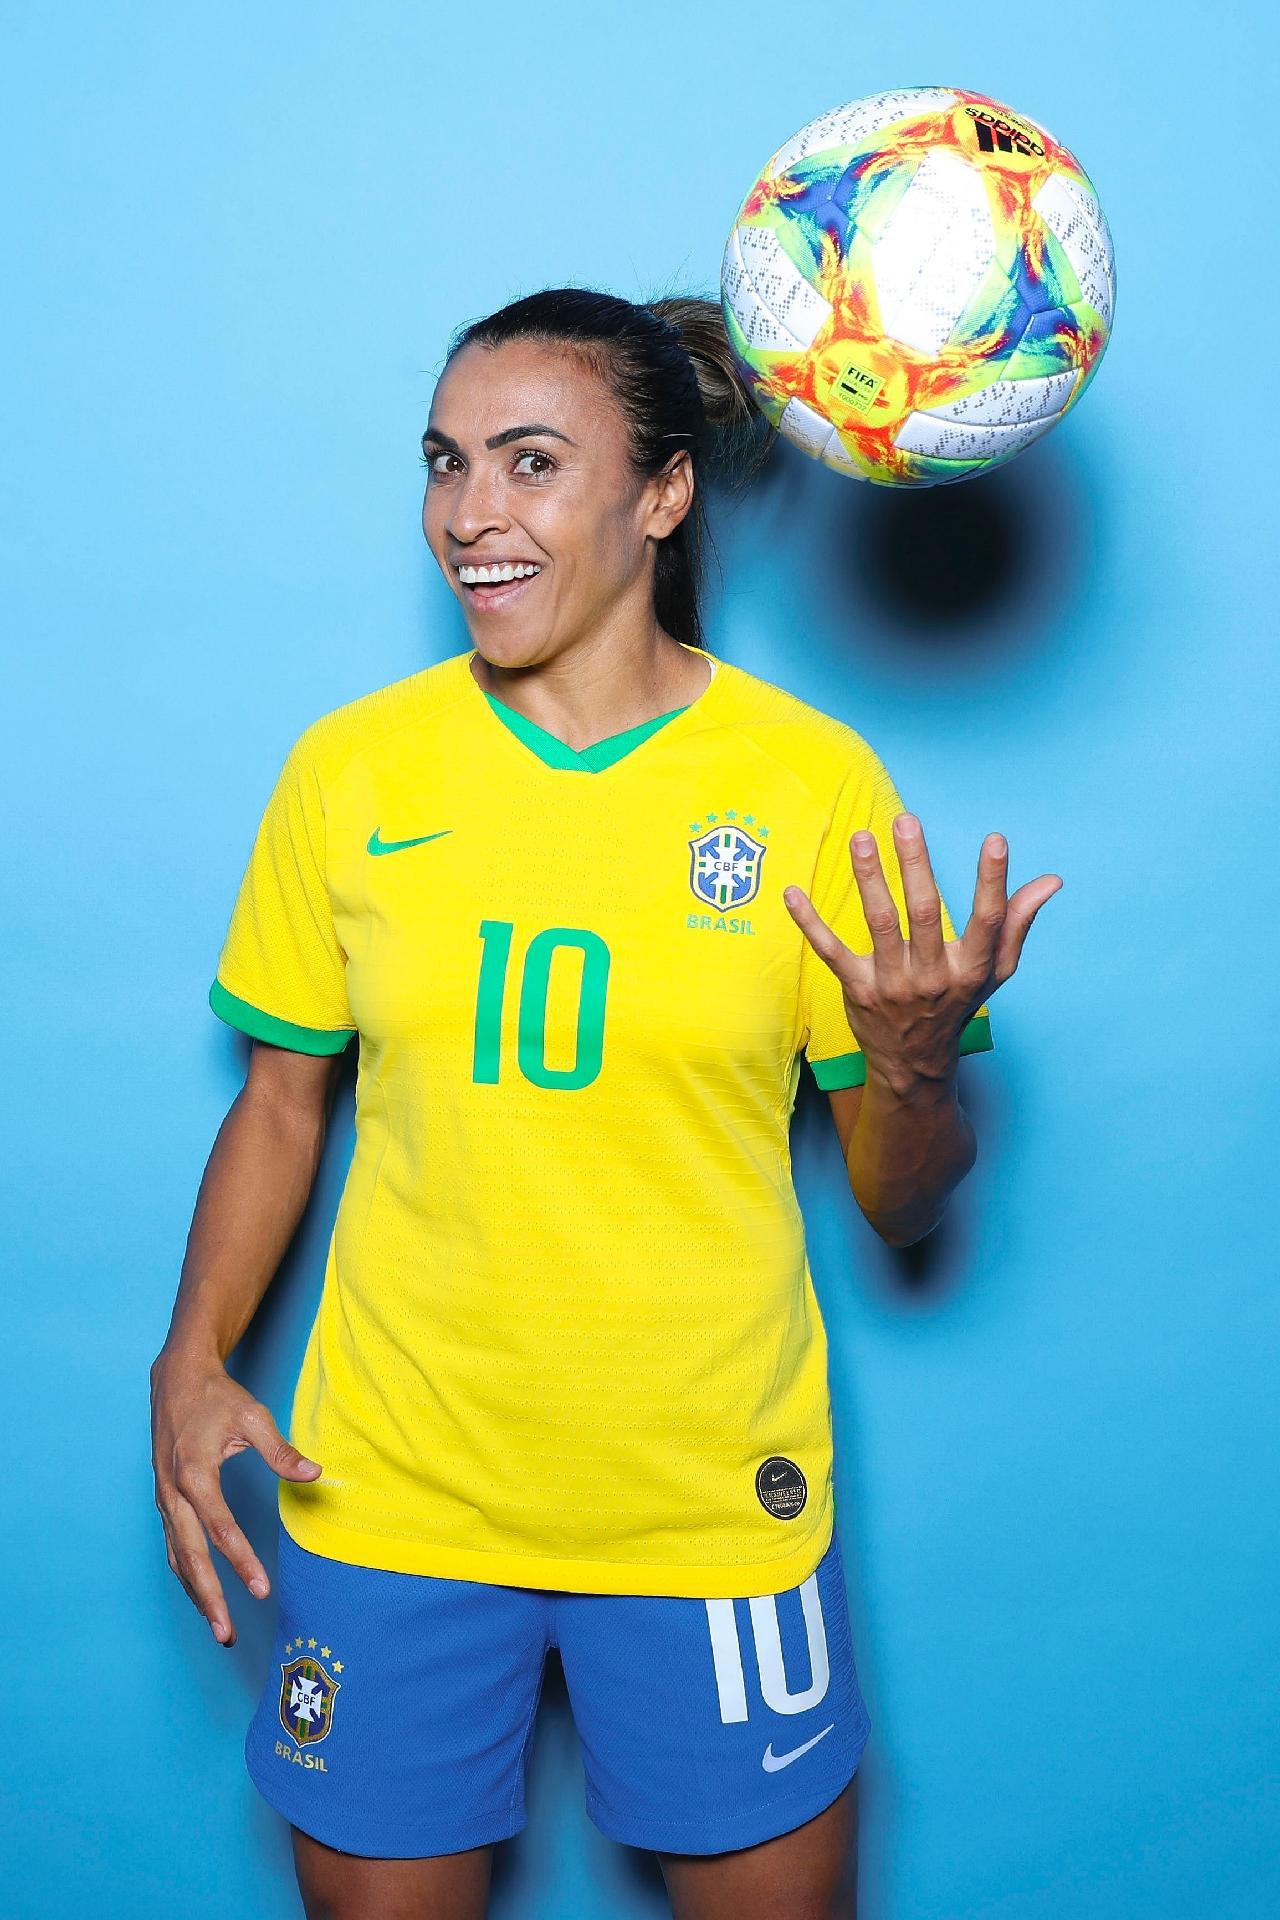 sobre a Marta nessa Copa do Mundo 🫶